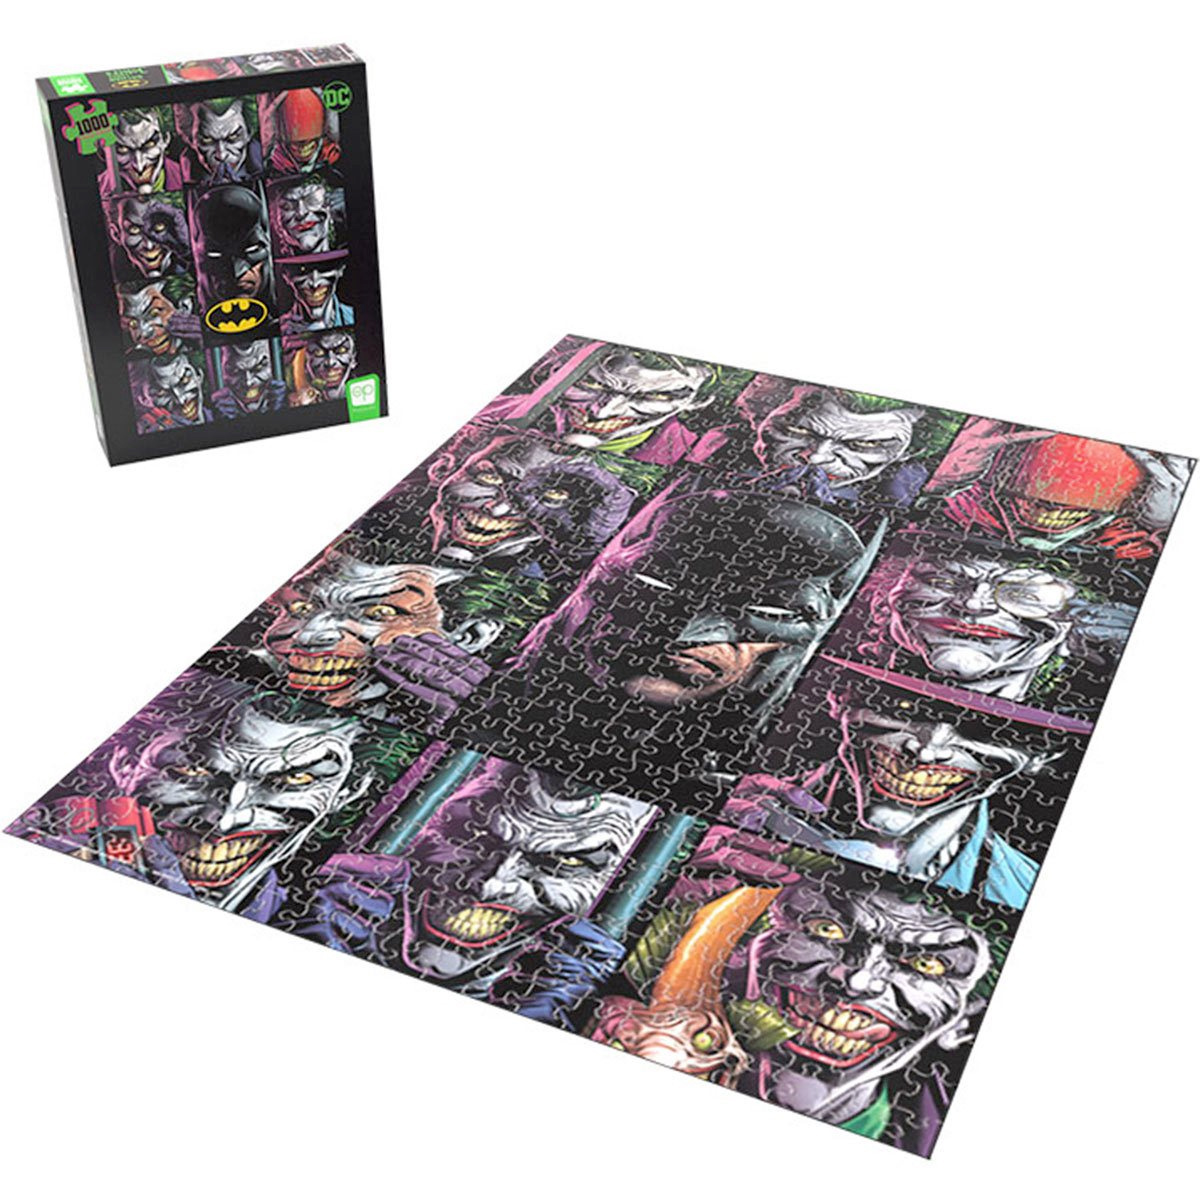 Quebra-Cabeça Coringa da Graphic Novel Batman: Three Jokers com 1.000 Peças